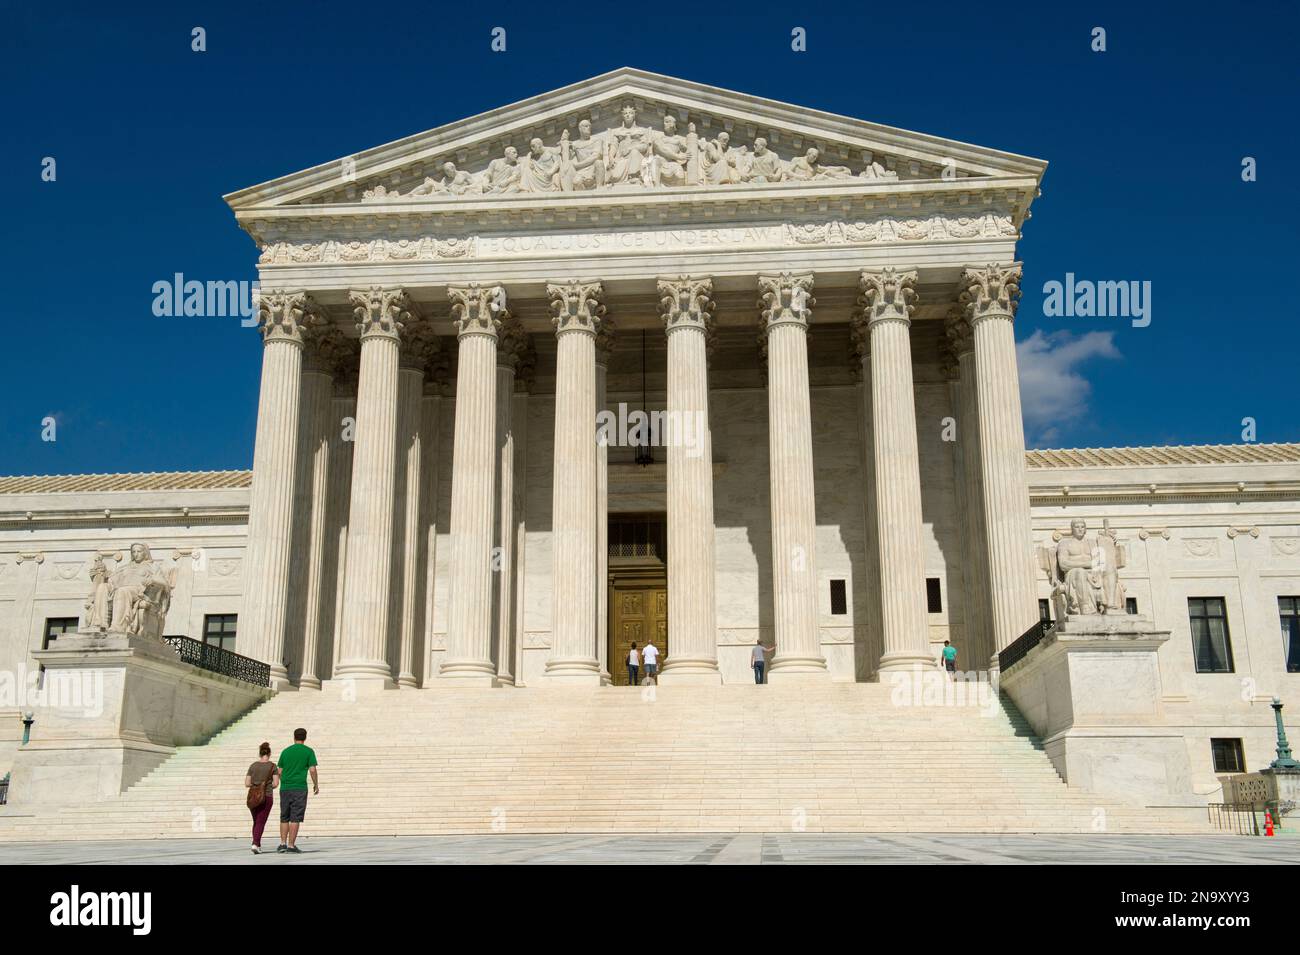 Touristen besuchen das Gebäude des Obersten Gerichtshofs der Vereinigten Staaten; Washington, District of Columbia, Vereinigte Staaten von Amerika Stockfoto